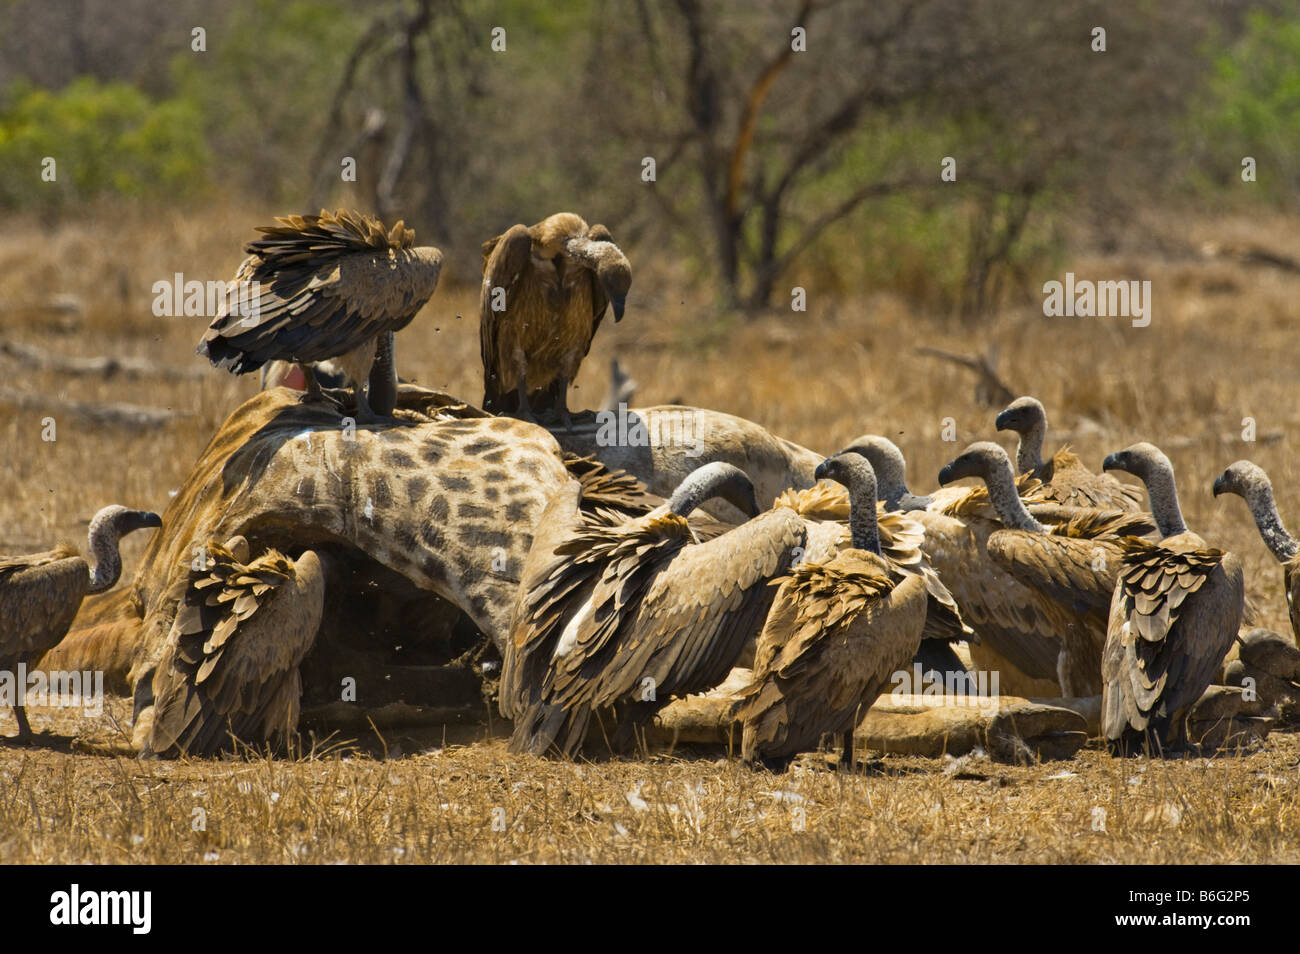 wilde Tiere füttern viel viele Geier Vulture AAS Essen, Süd-Afrika Südafrika Essen Fütterung Scavenger-giraffe Stockfoto